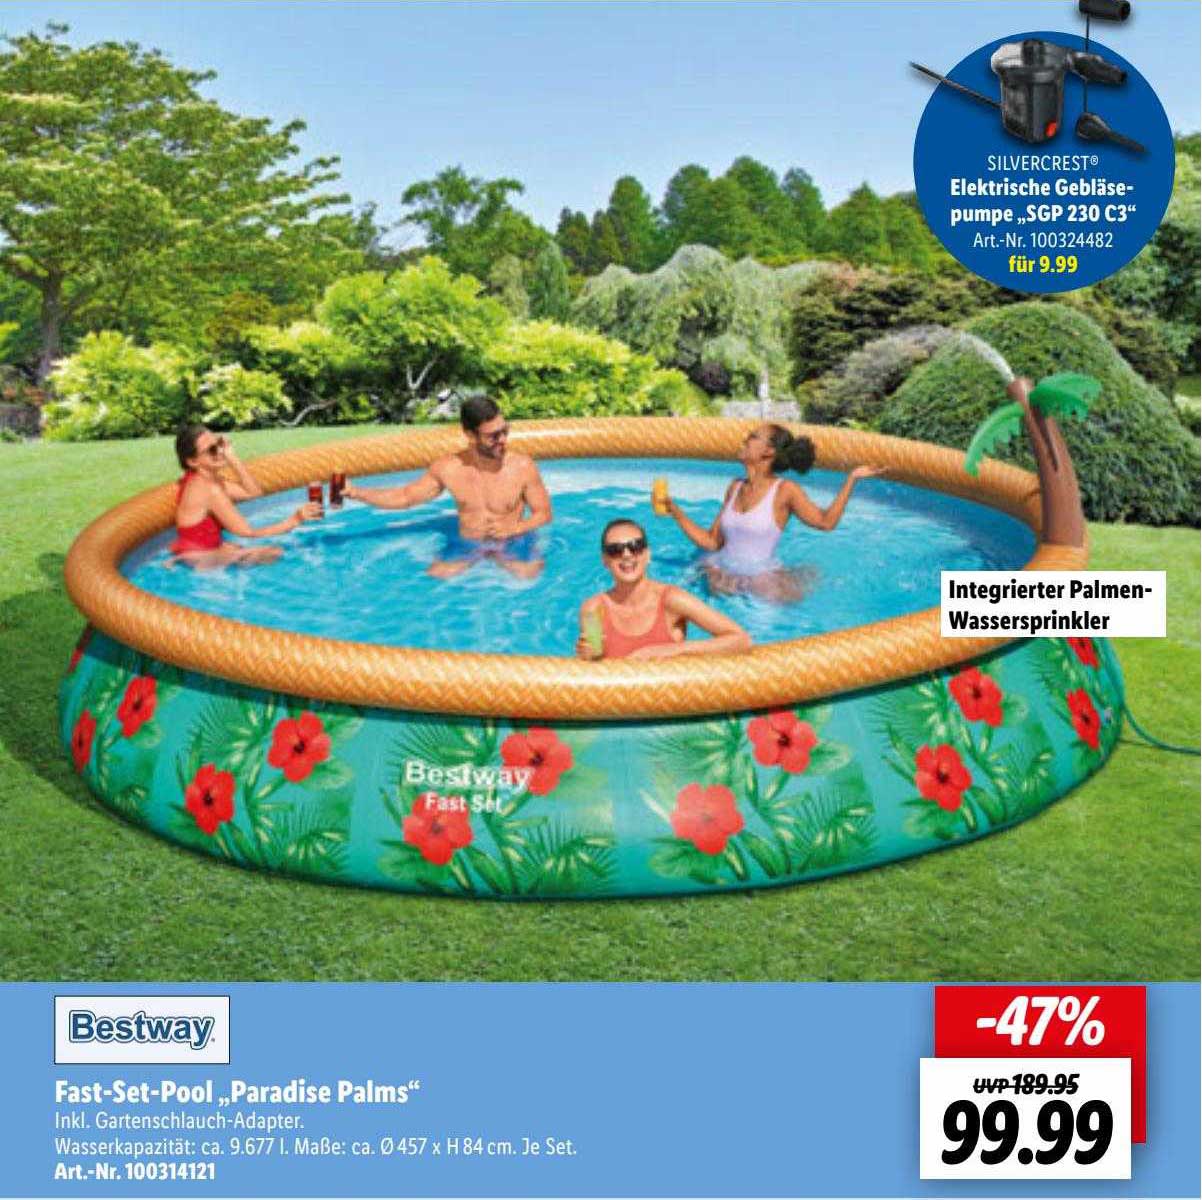 Angebot bei Bestway Palms” Lidl „paradise Fast-set-pool